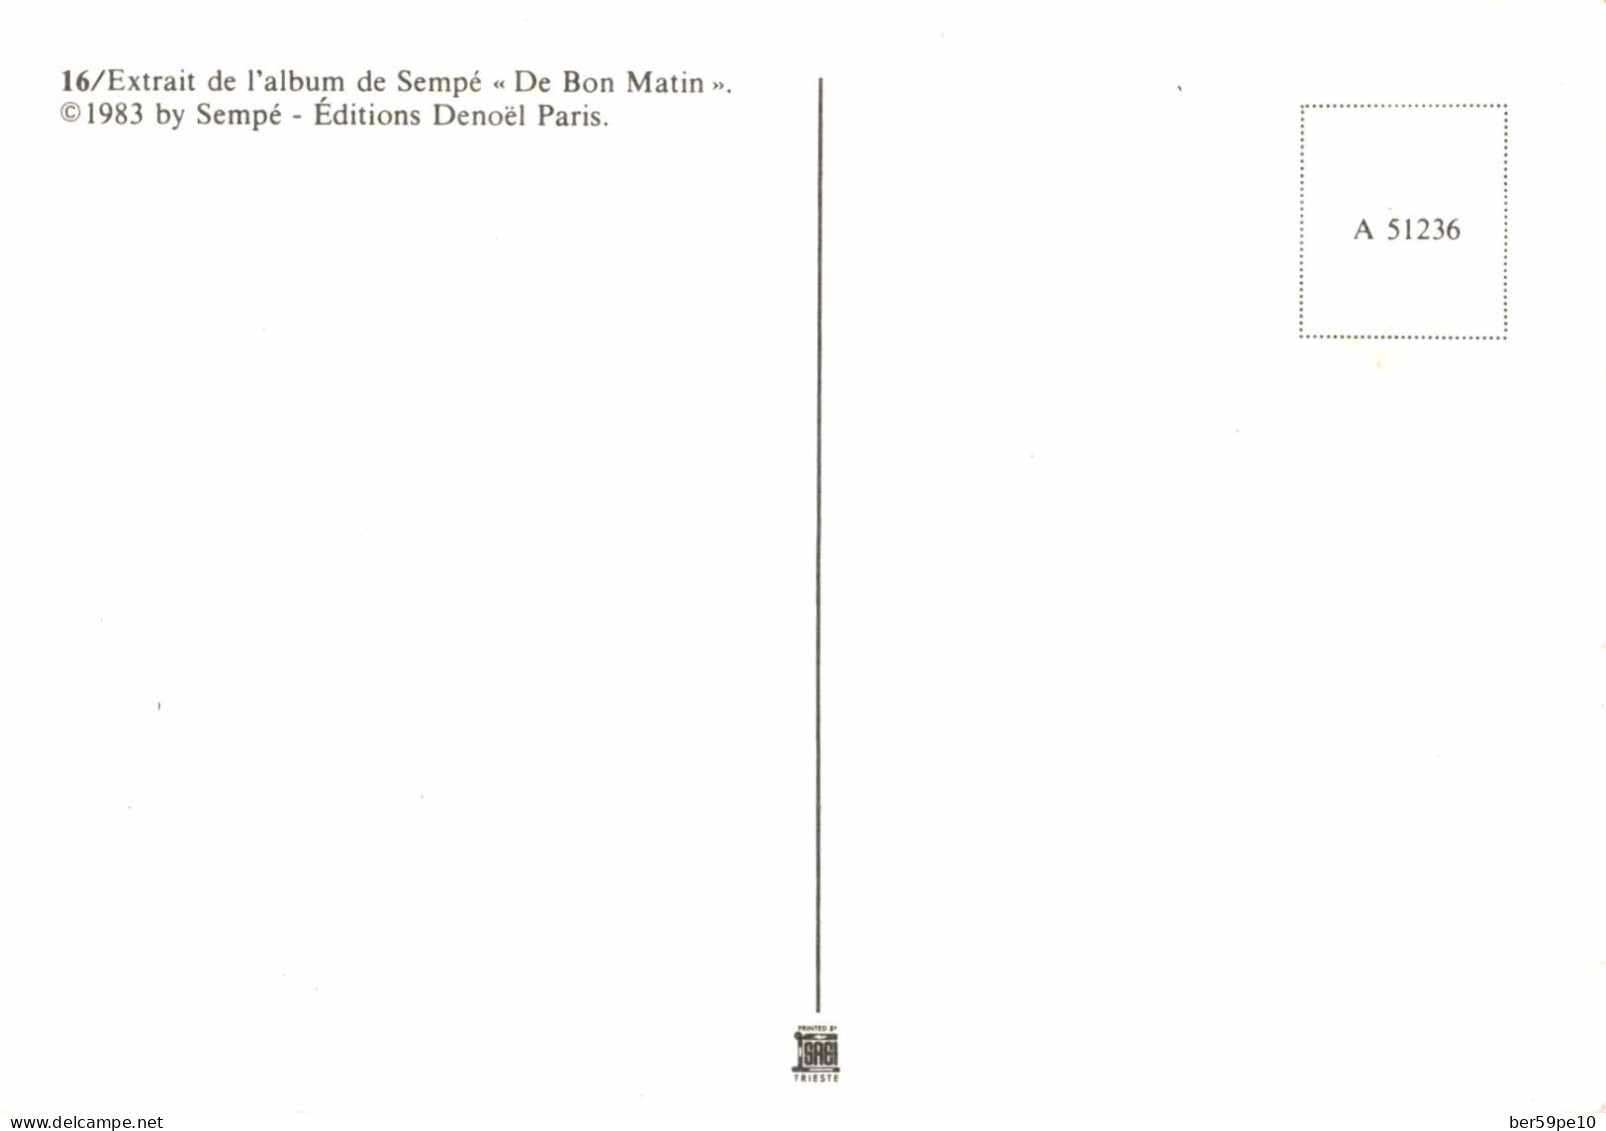 EXTRAIT DE L'ALBUM DE SEMPE "DE BON MATIN" (EDITIONS DENOEL PARIS) - Sempé